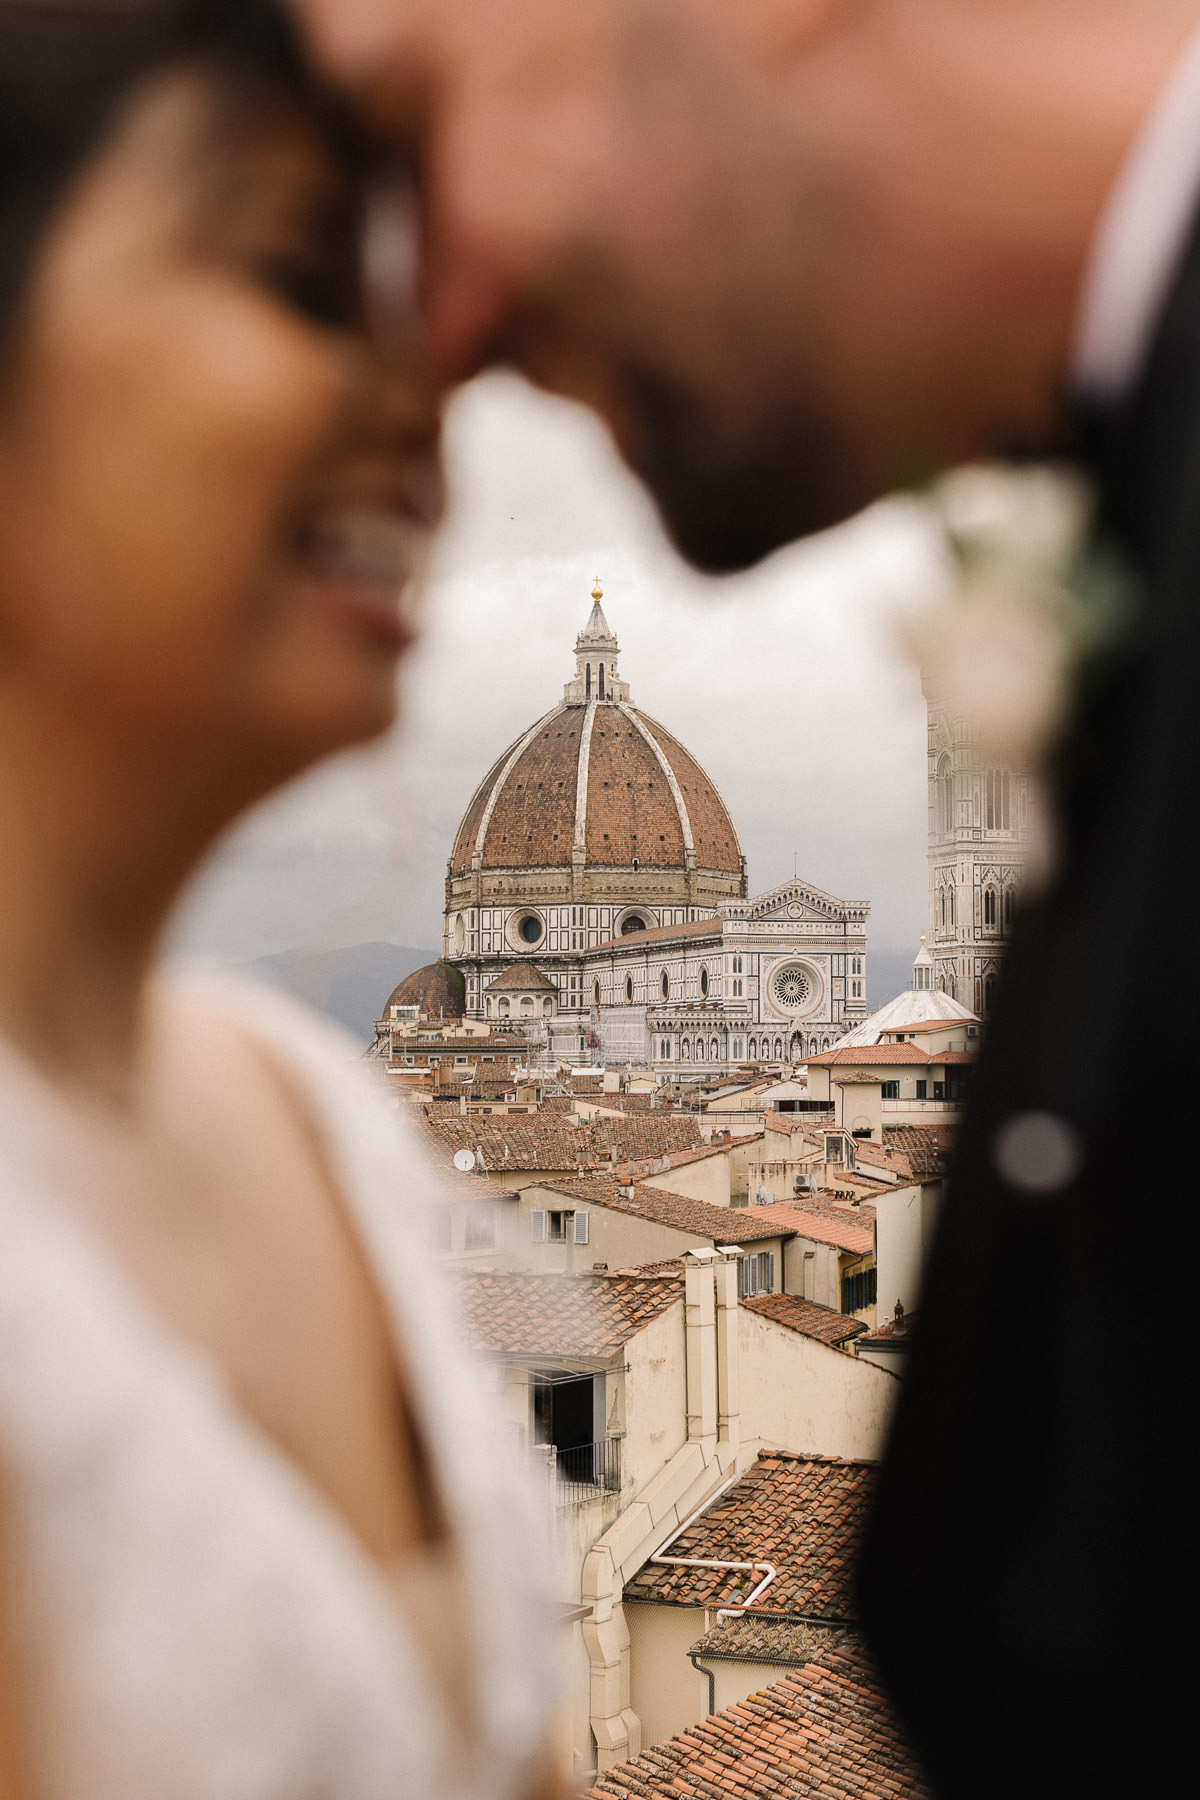 Foto der Hochzeit in der Villa Corsini in der Toskana, aufgenommen von Julian Kanz, Hochzeitsfotograf in Florenz